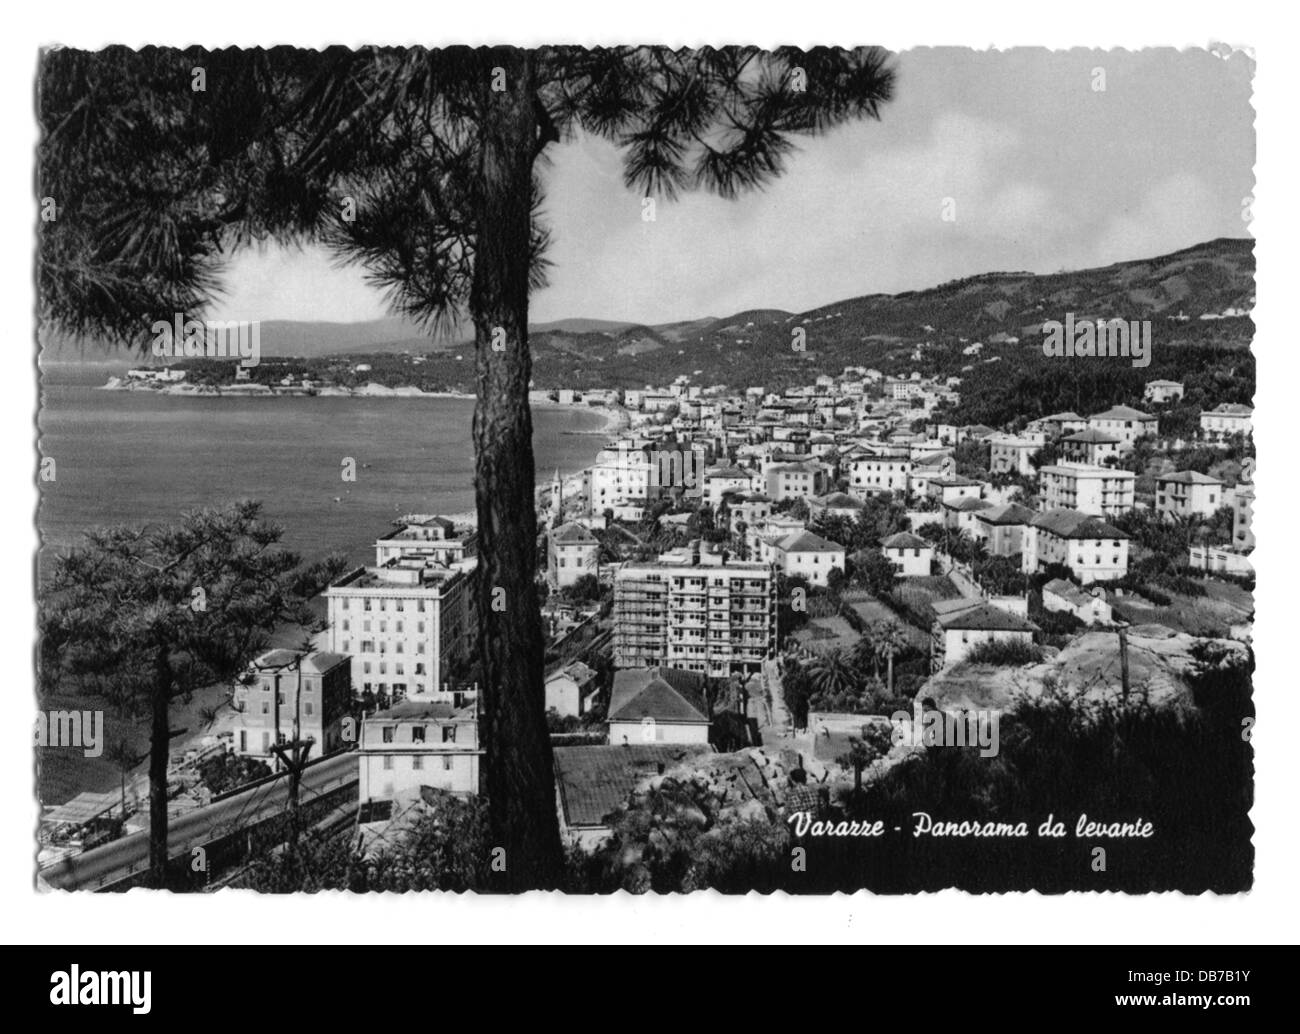 Geografia / viaggio, Italia, Varazze, panorama, cartolina fotografica, anni '50, diritti aggiuntivi-clearences-non disponibile Foto Stock